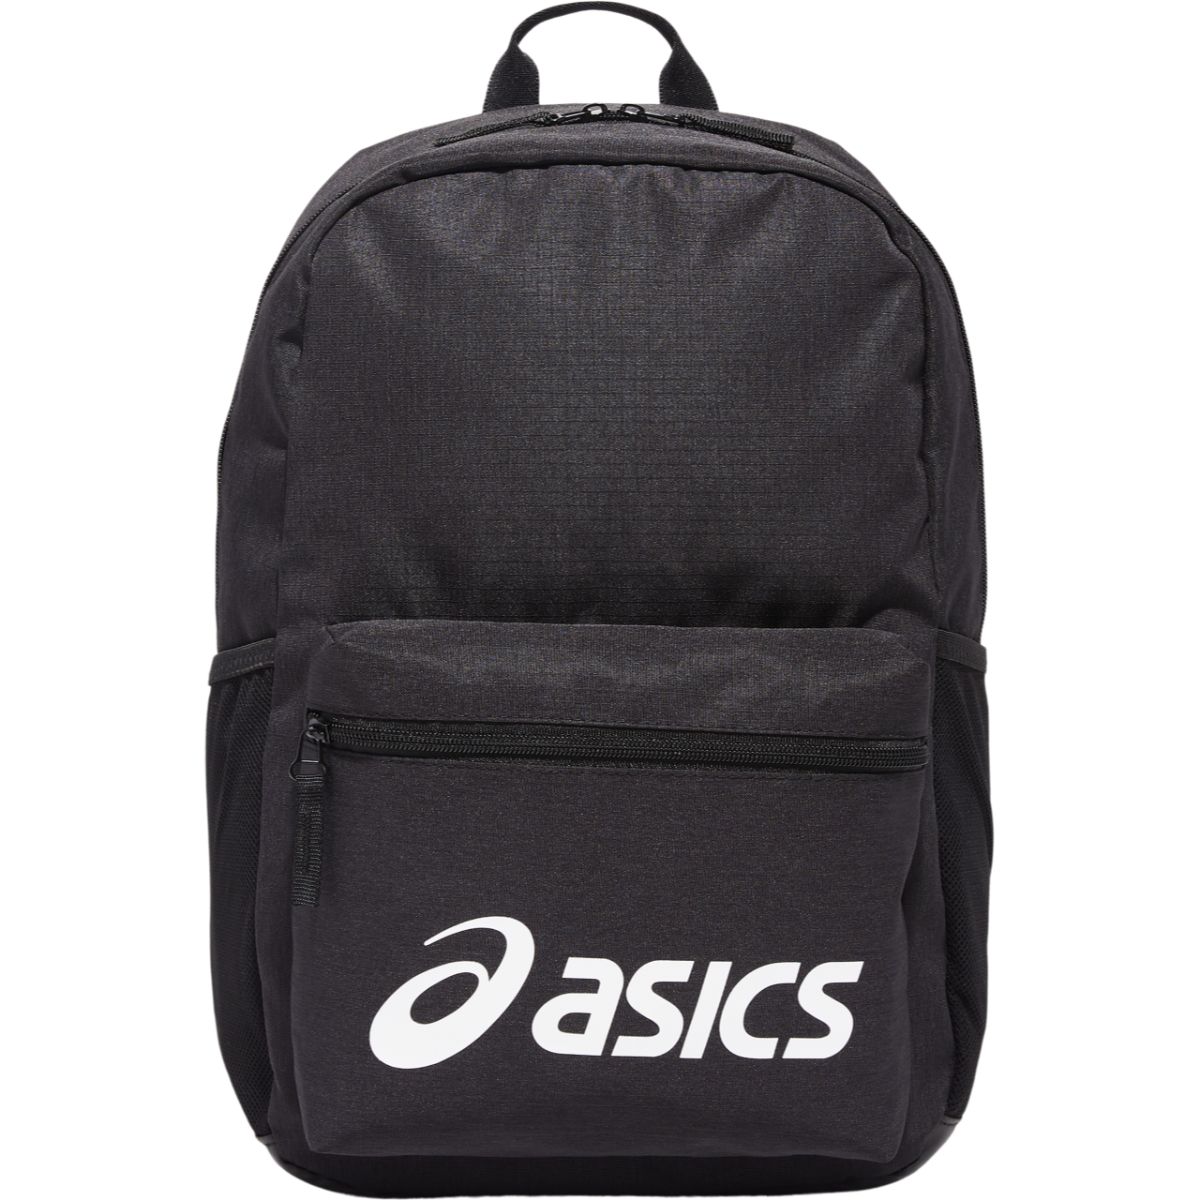 Asics Sport Backpack Black תיק גב אסיקס